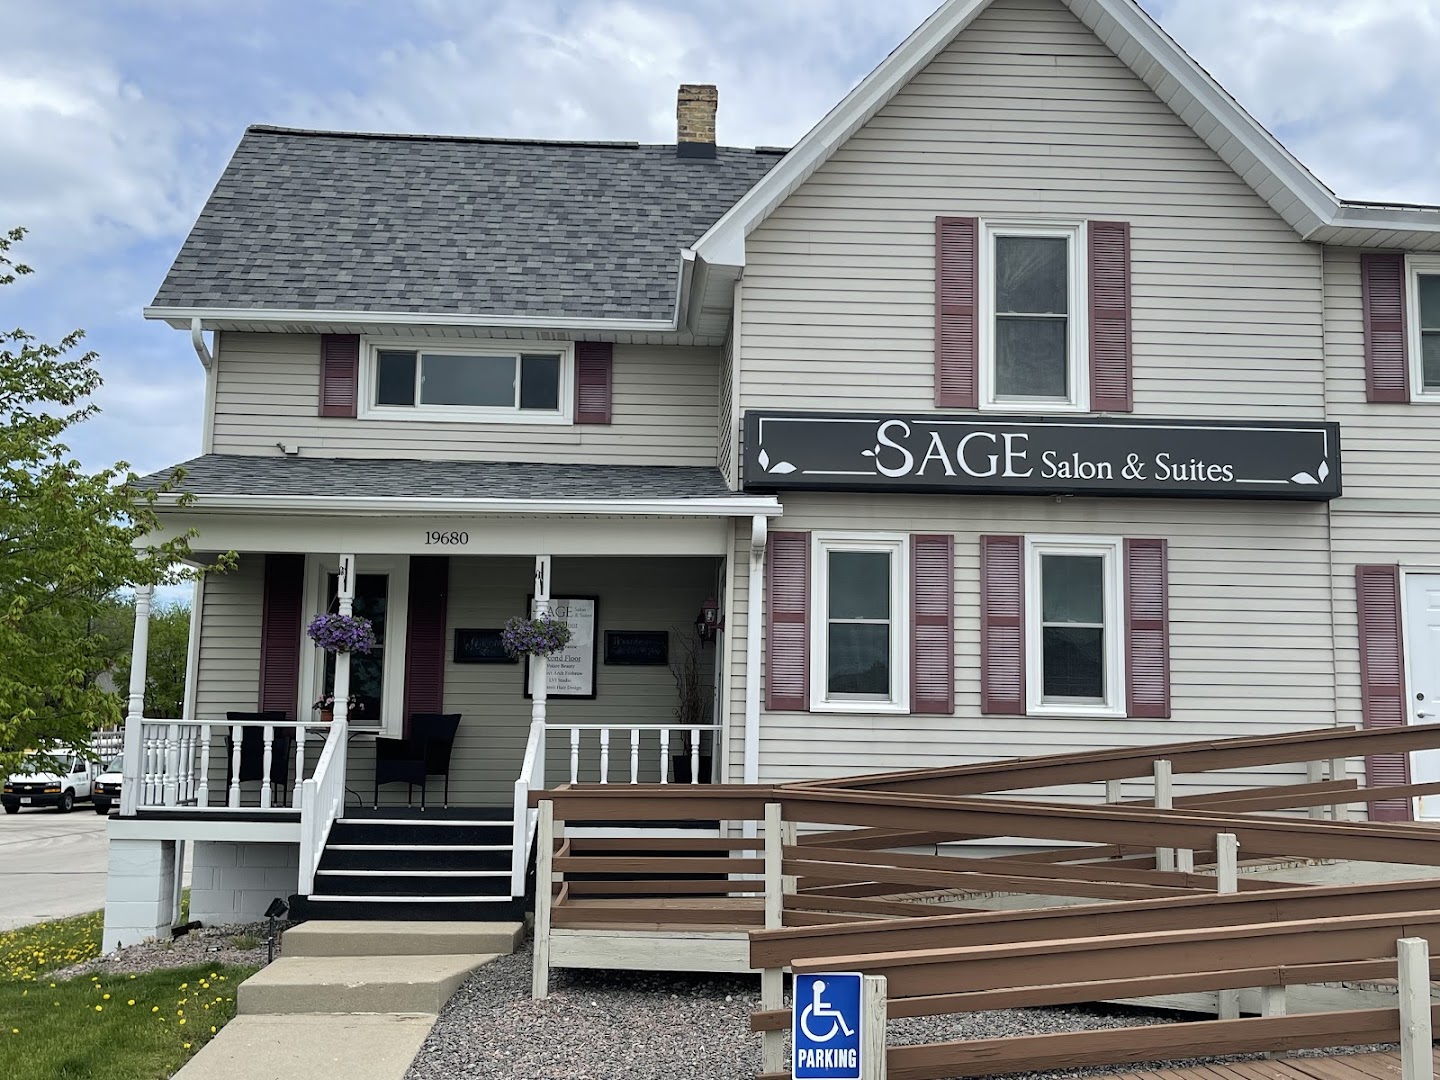 Sage Salon & Suites